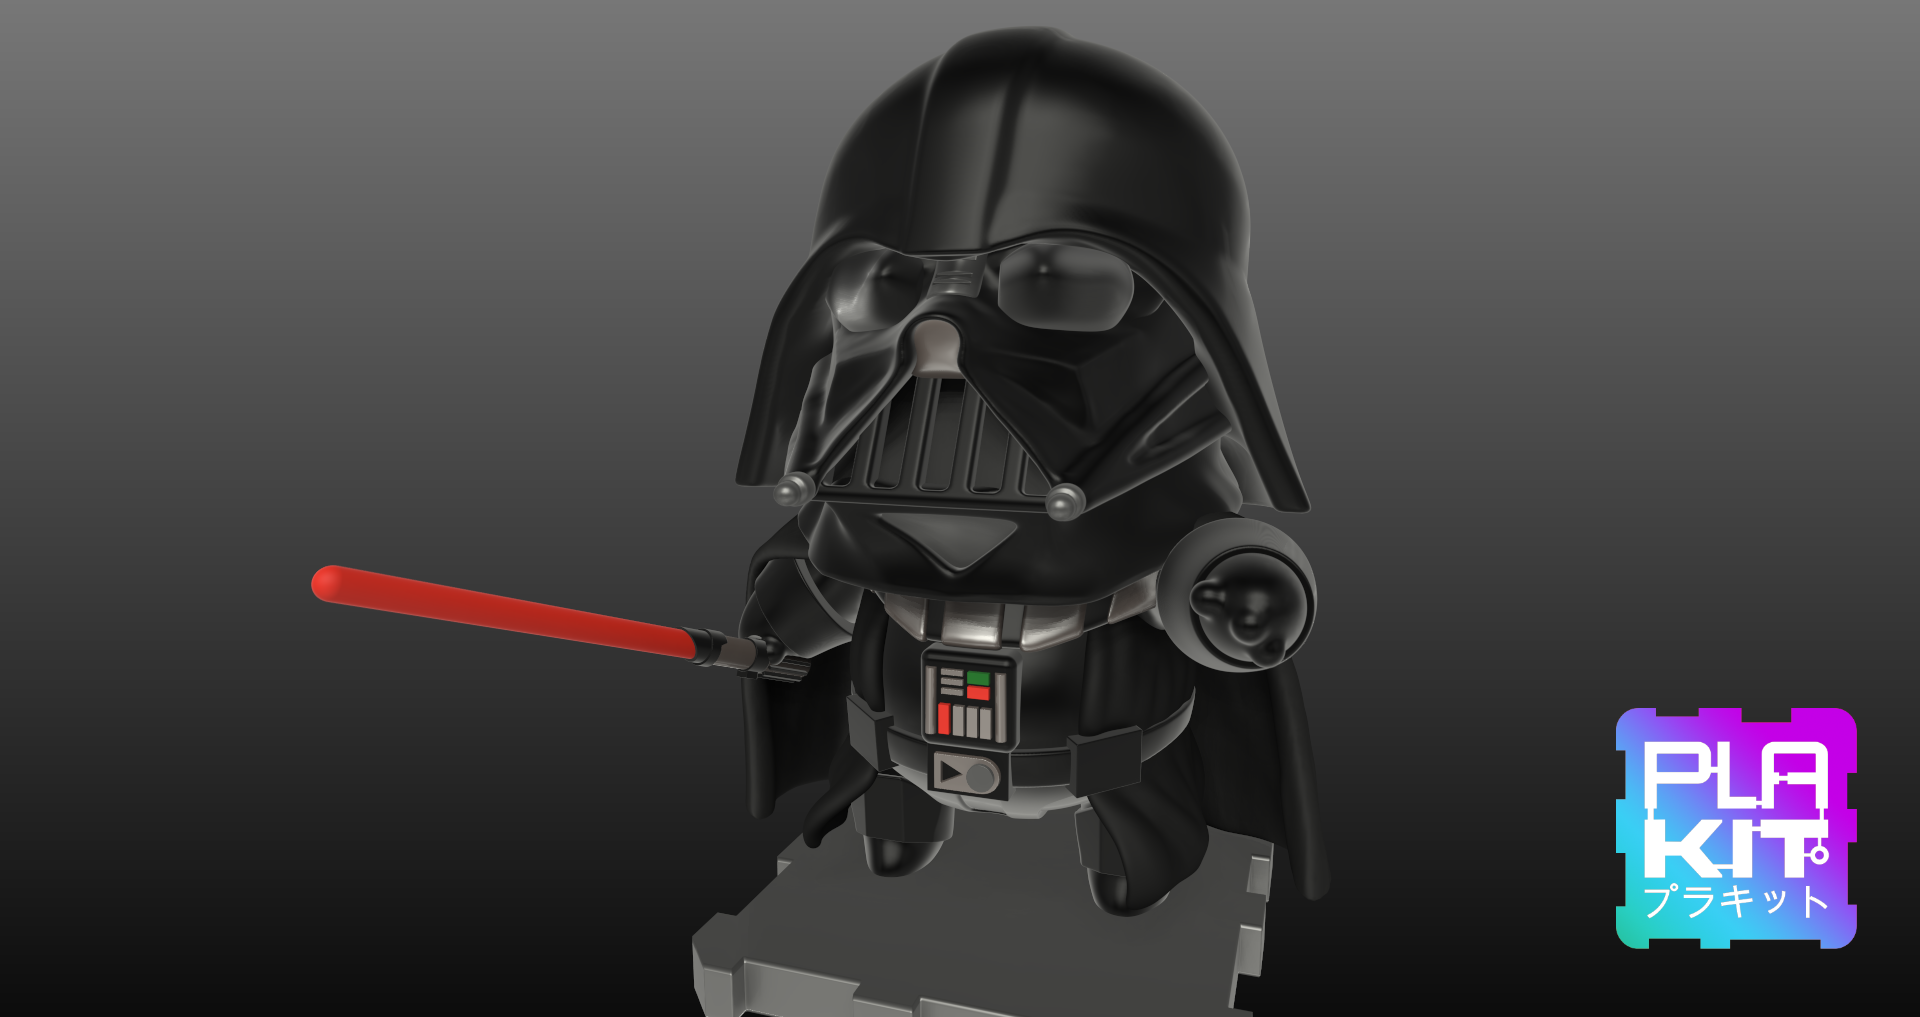 DARTHVADER2.png Télécharger fichier STL gratuit Star Wars DARTH VADER ! • Objet pour imprimante 3D, purakito